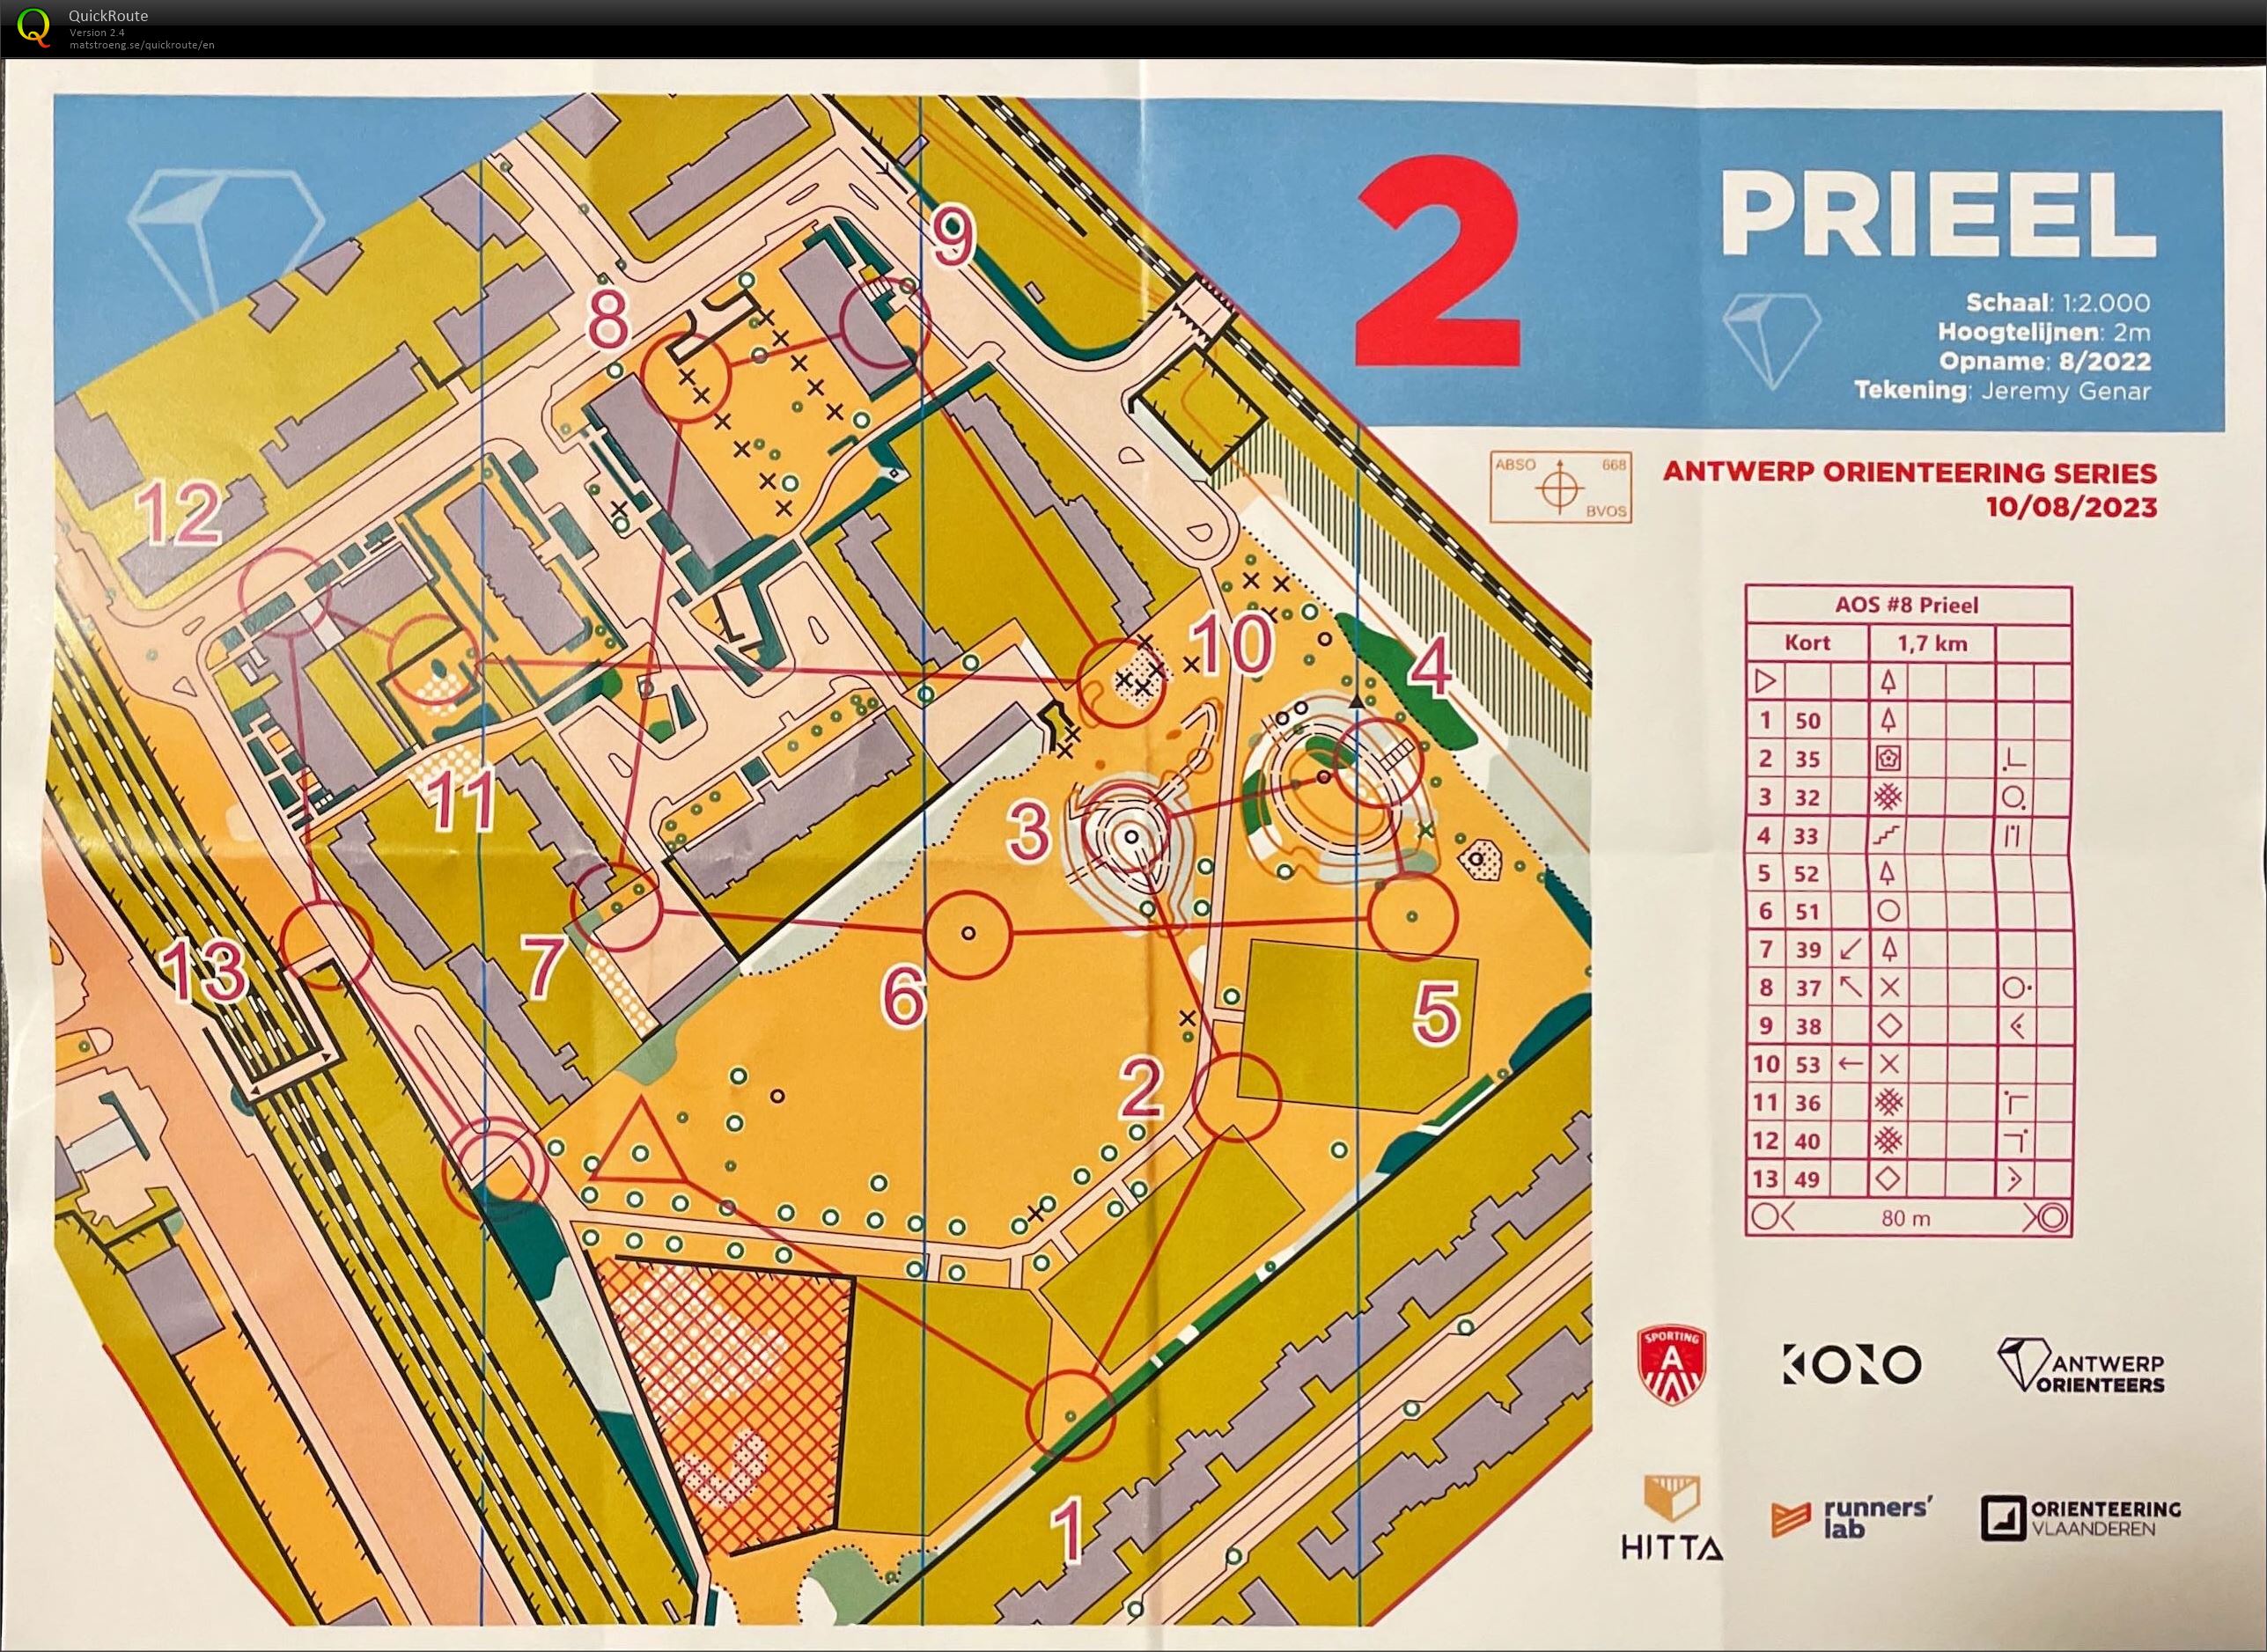 Antwerp Orienteering Series - Prieel - Kort (10/08/2023)